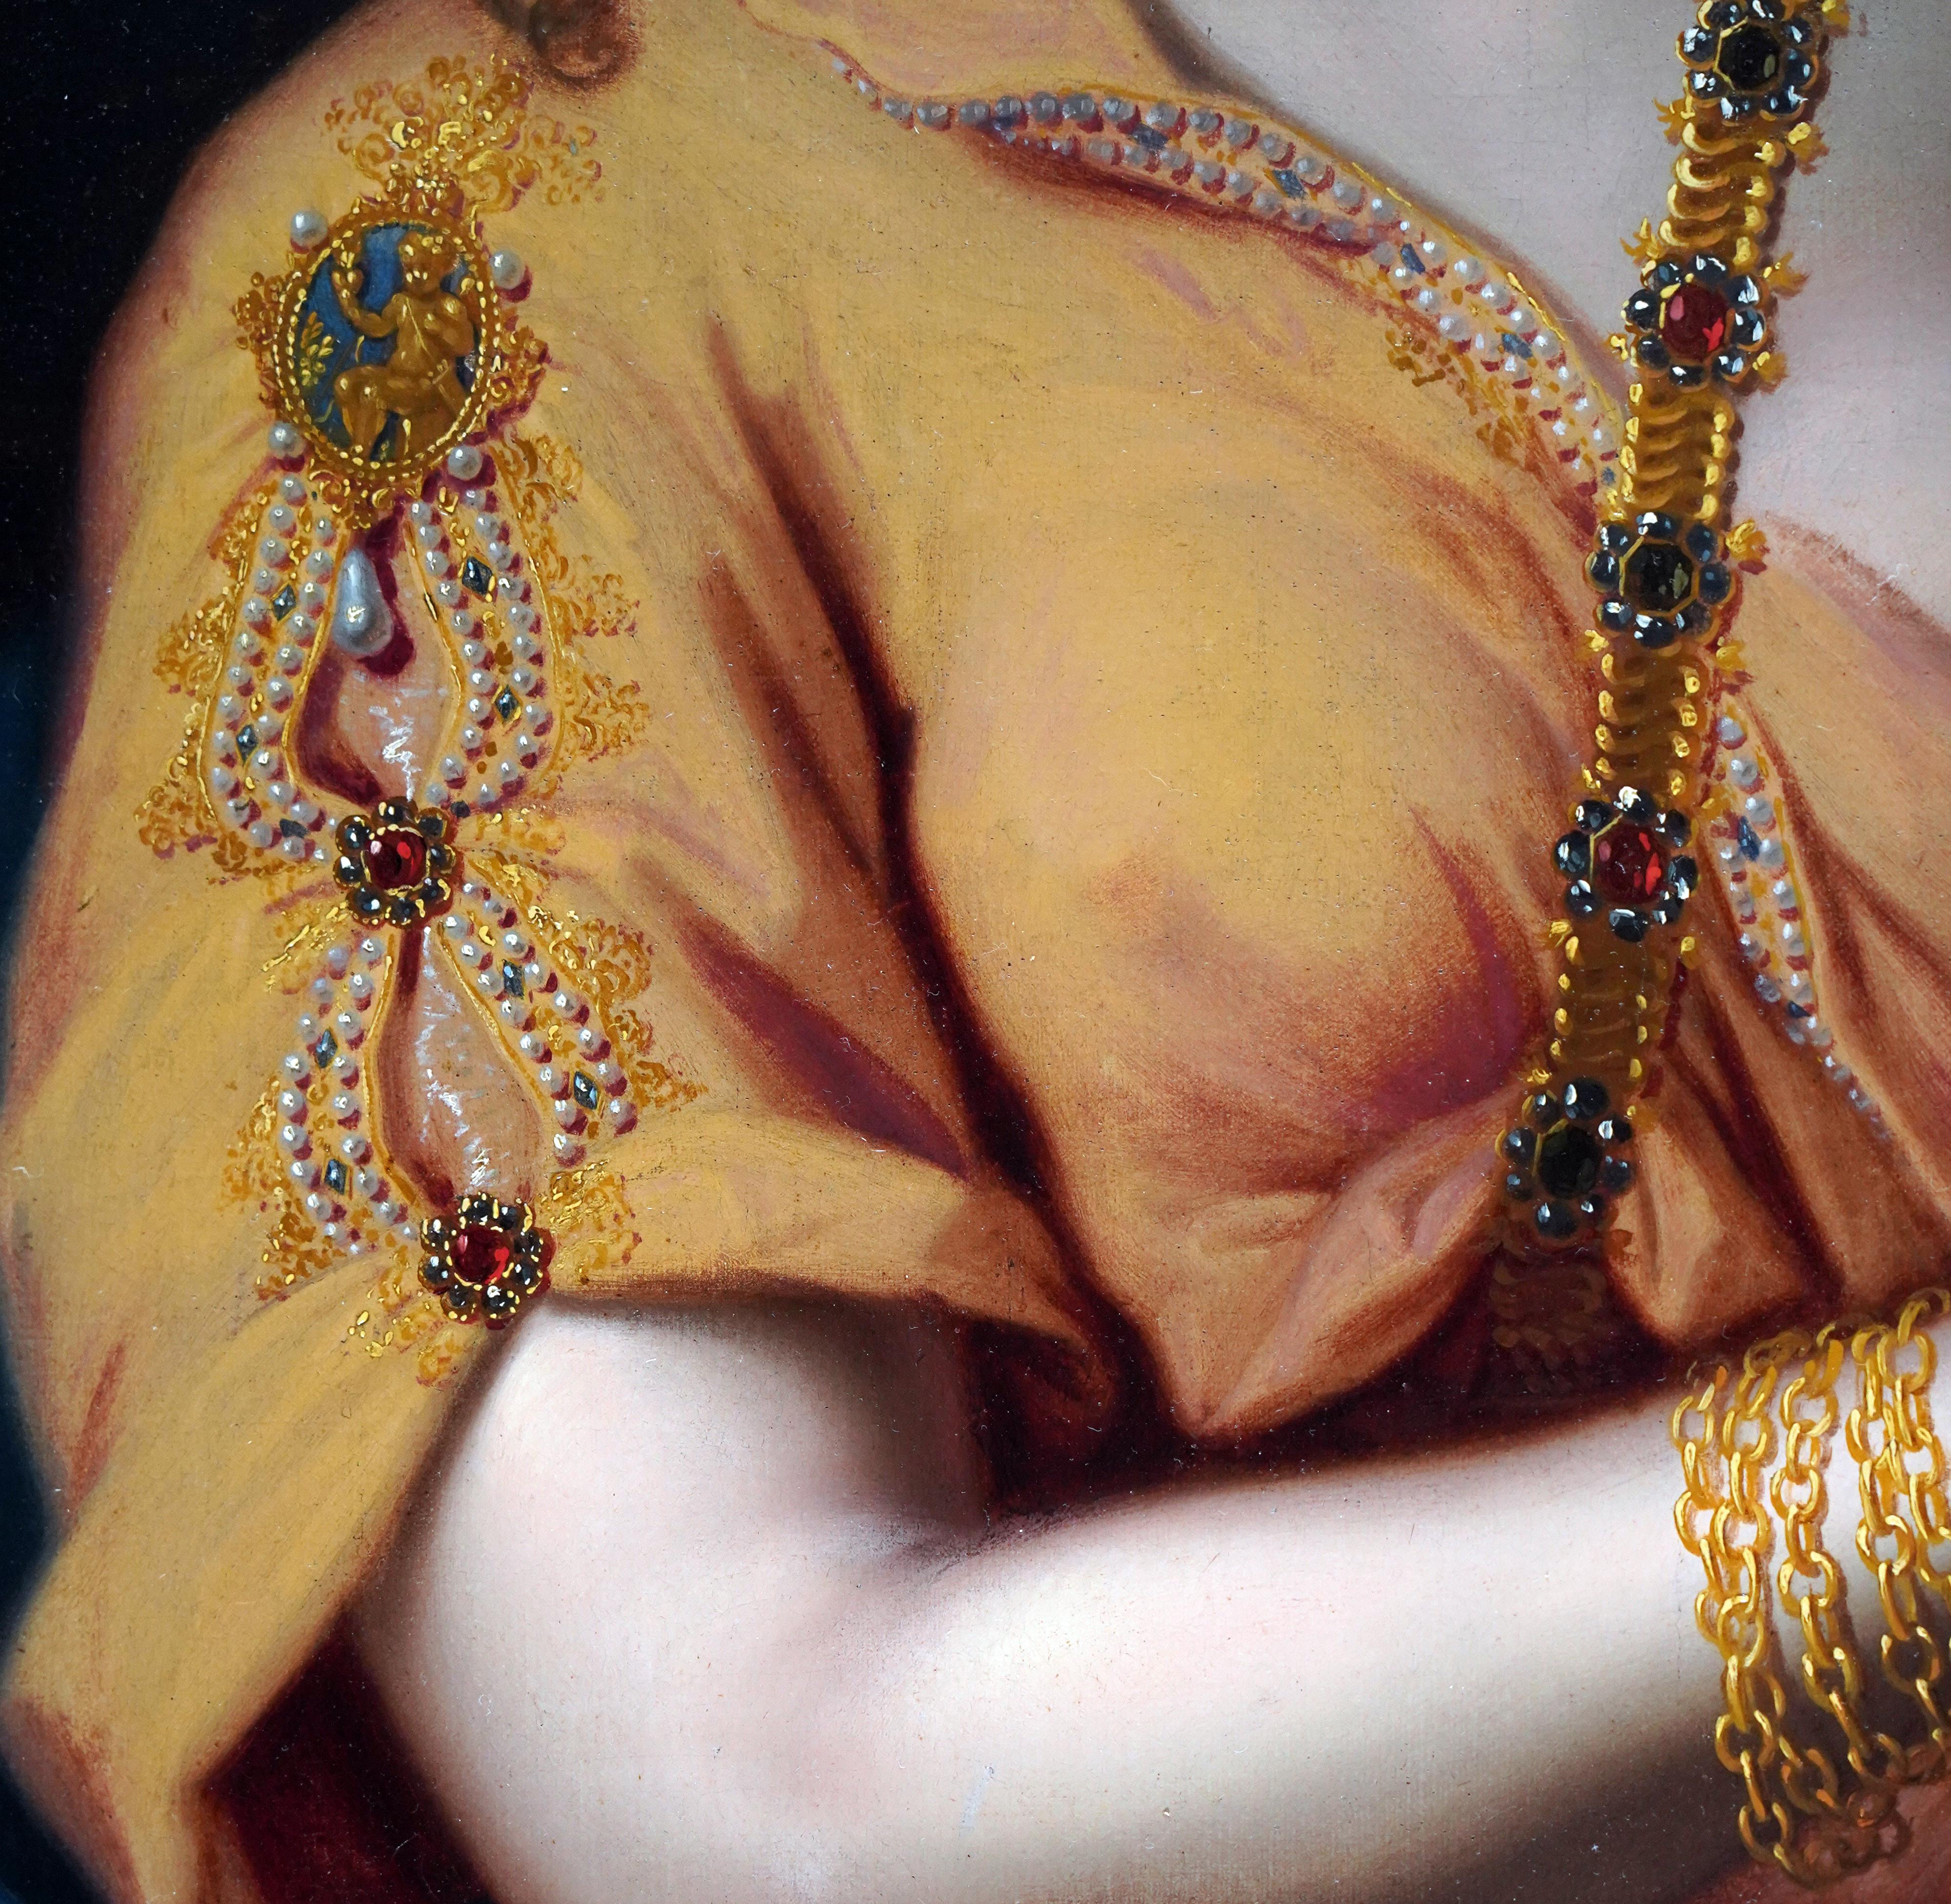 Cleopatra - Painting de Gabriel Revel